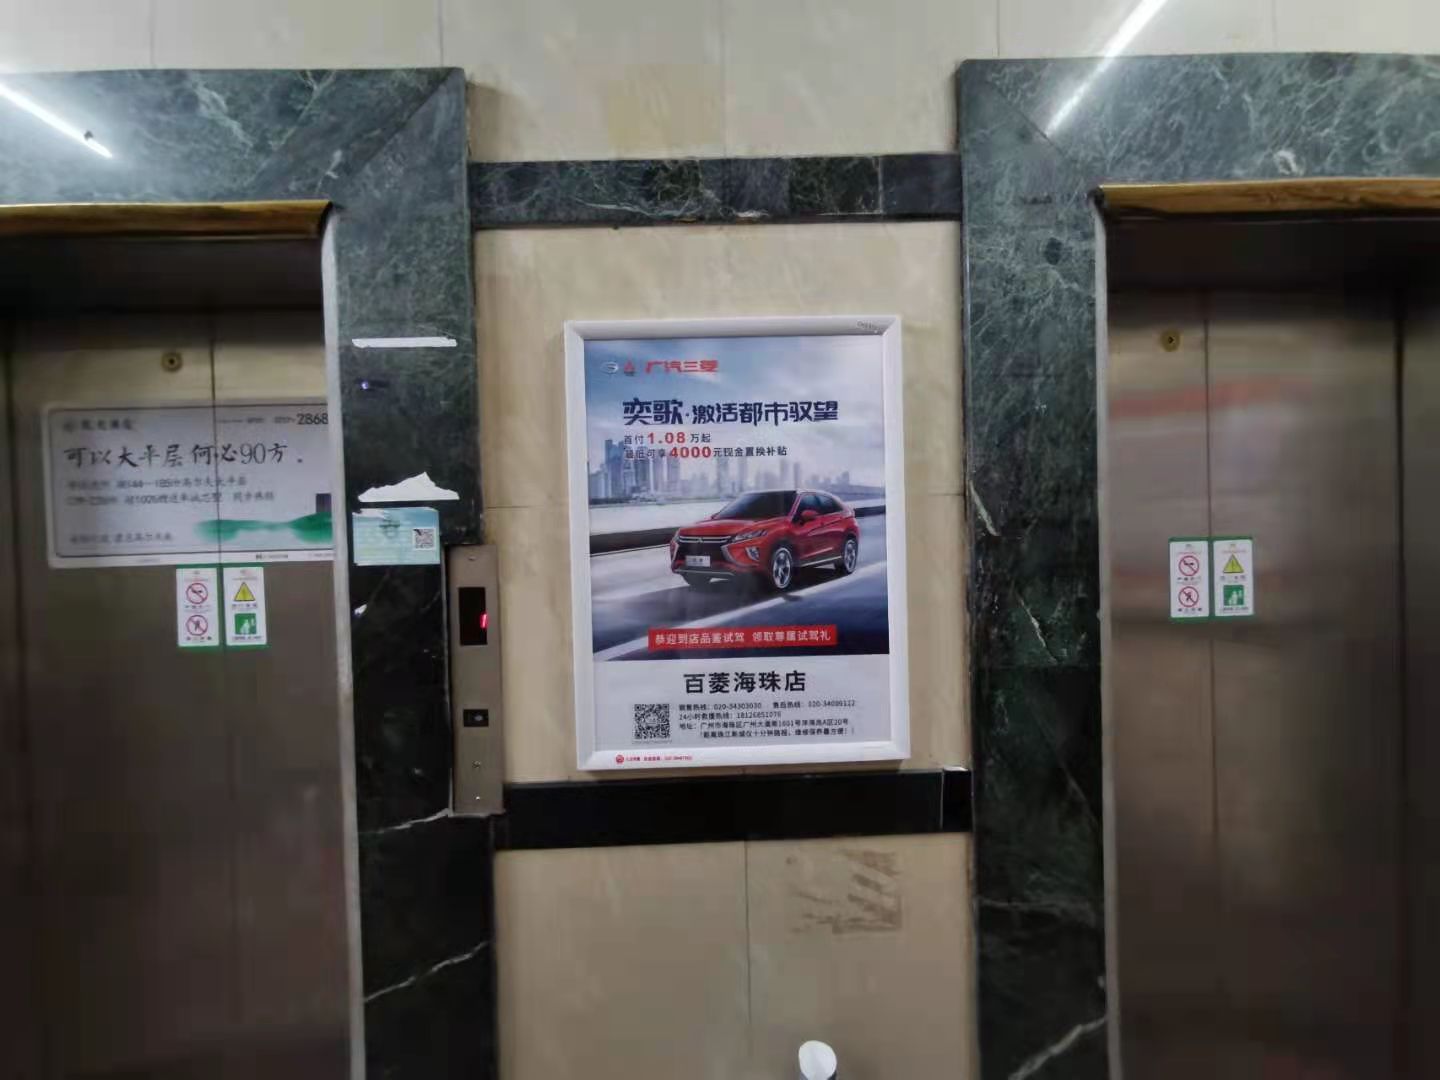 投放广州电梯框架广告投放广州电梯框架广告电梯媒体广告能否立刻带来销量或流量吗？